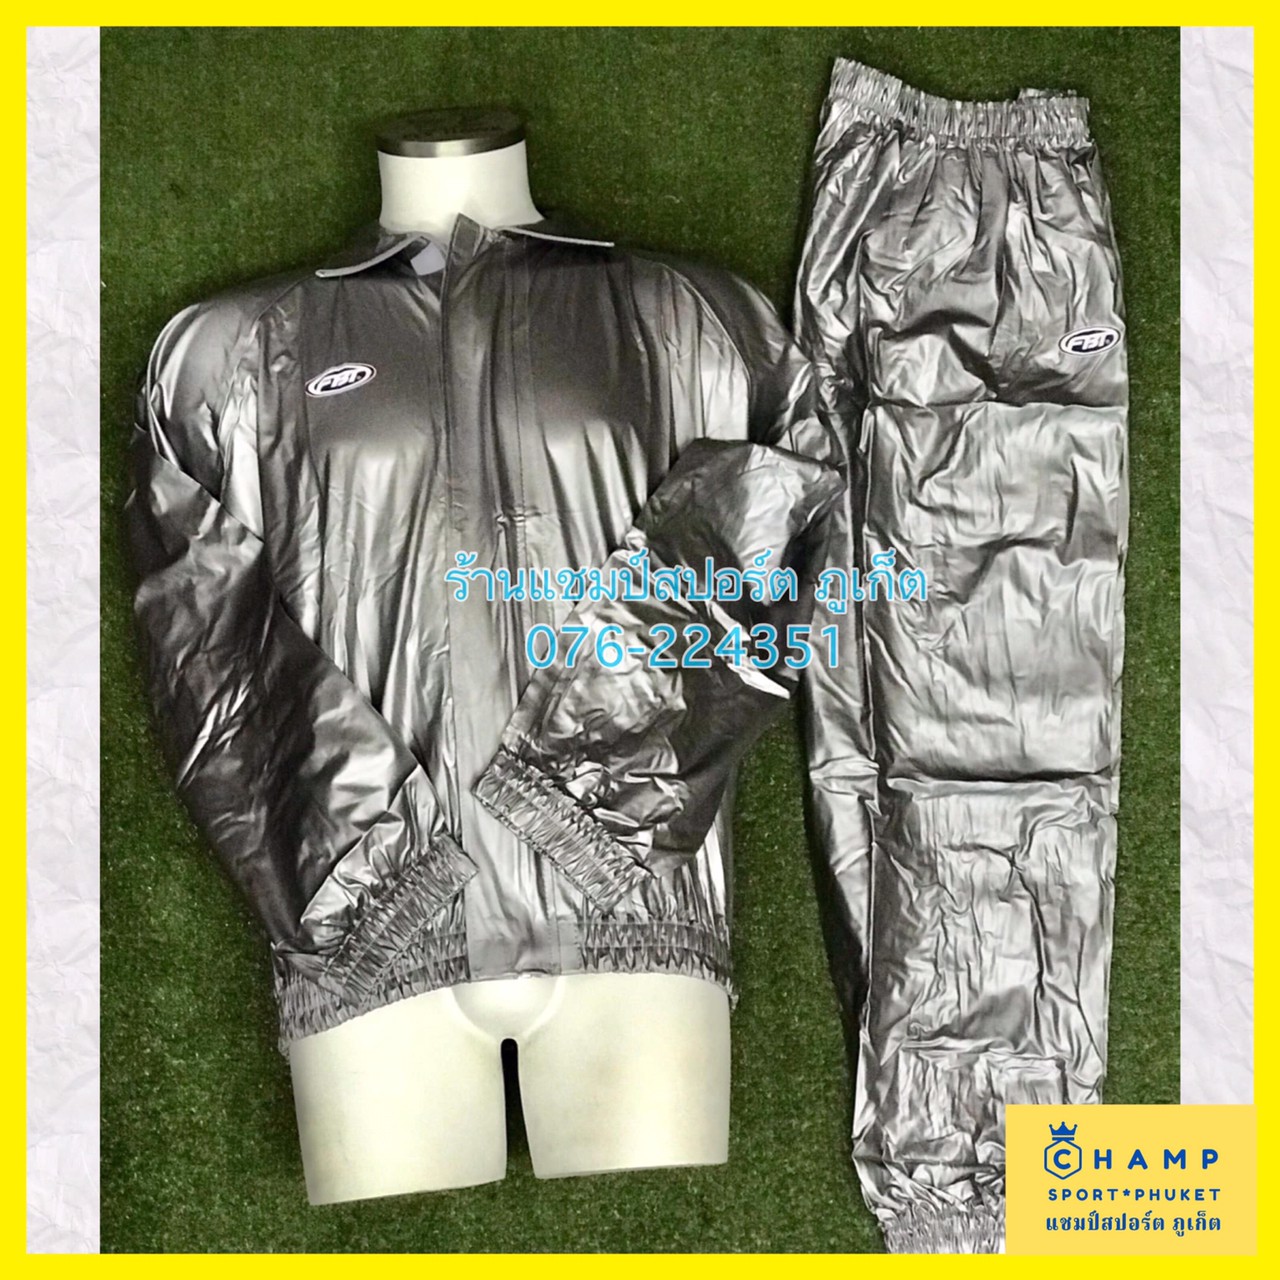 ชุดลดน้ำหนัก FBT ชุดซาวน่า สีเทา (ลิขสิทธ์แท้) สีเทา ชุดควบคุมน้ำหนัก(เสื้อ+กางเกง) Sauna Suits ชุดรีดเหงื่อ